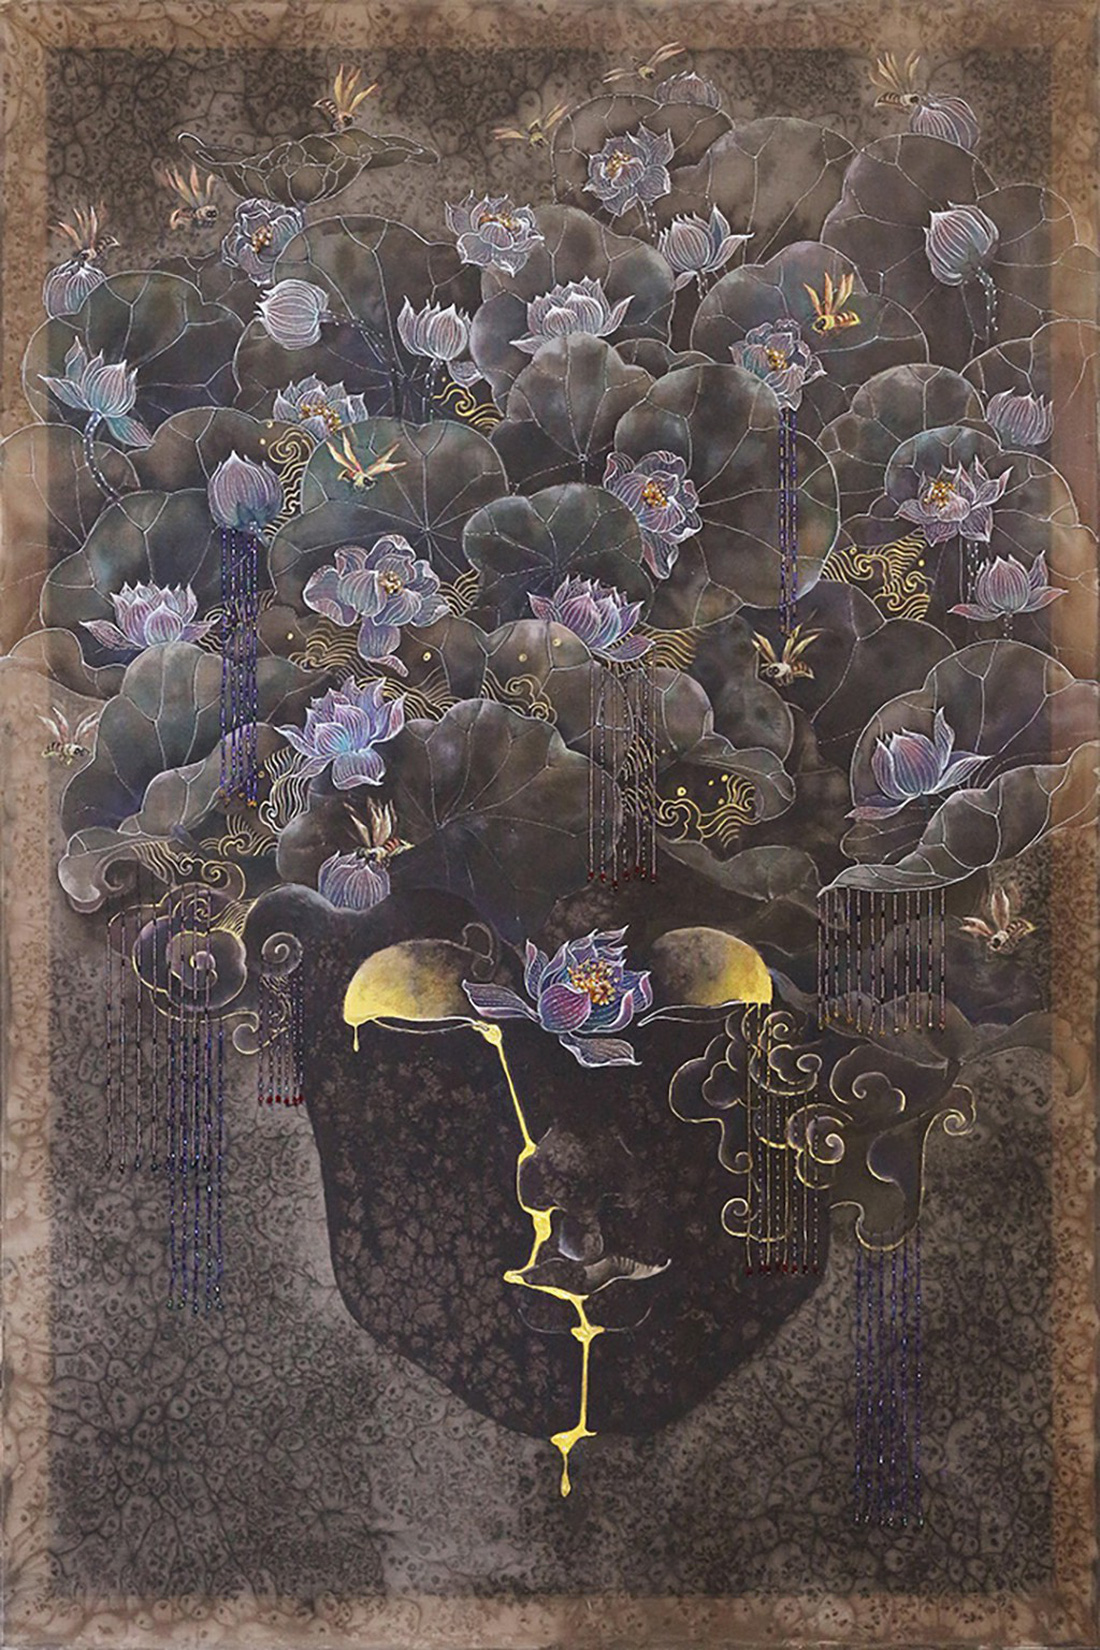 Họa sĩ Việt vẽ những nàng Mỵ Nương được Úc chọn triển lãm - Ảnh 1.